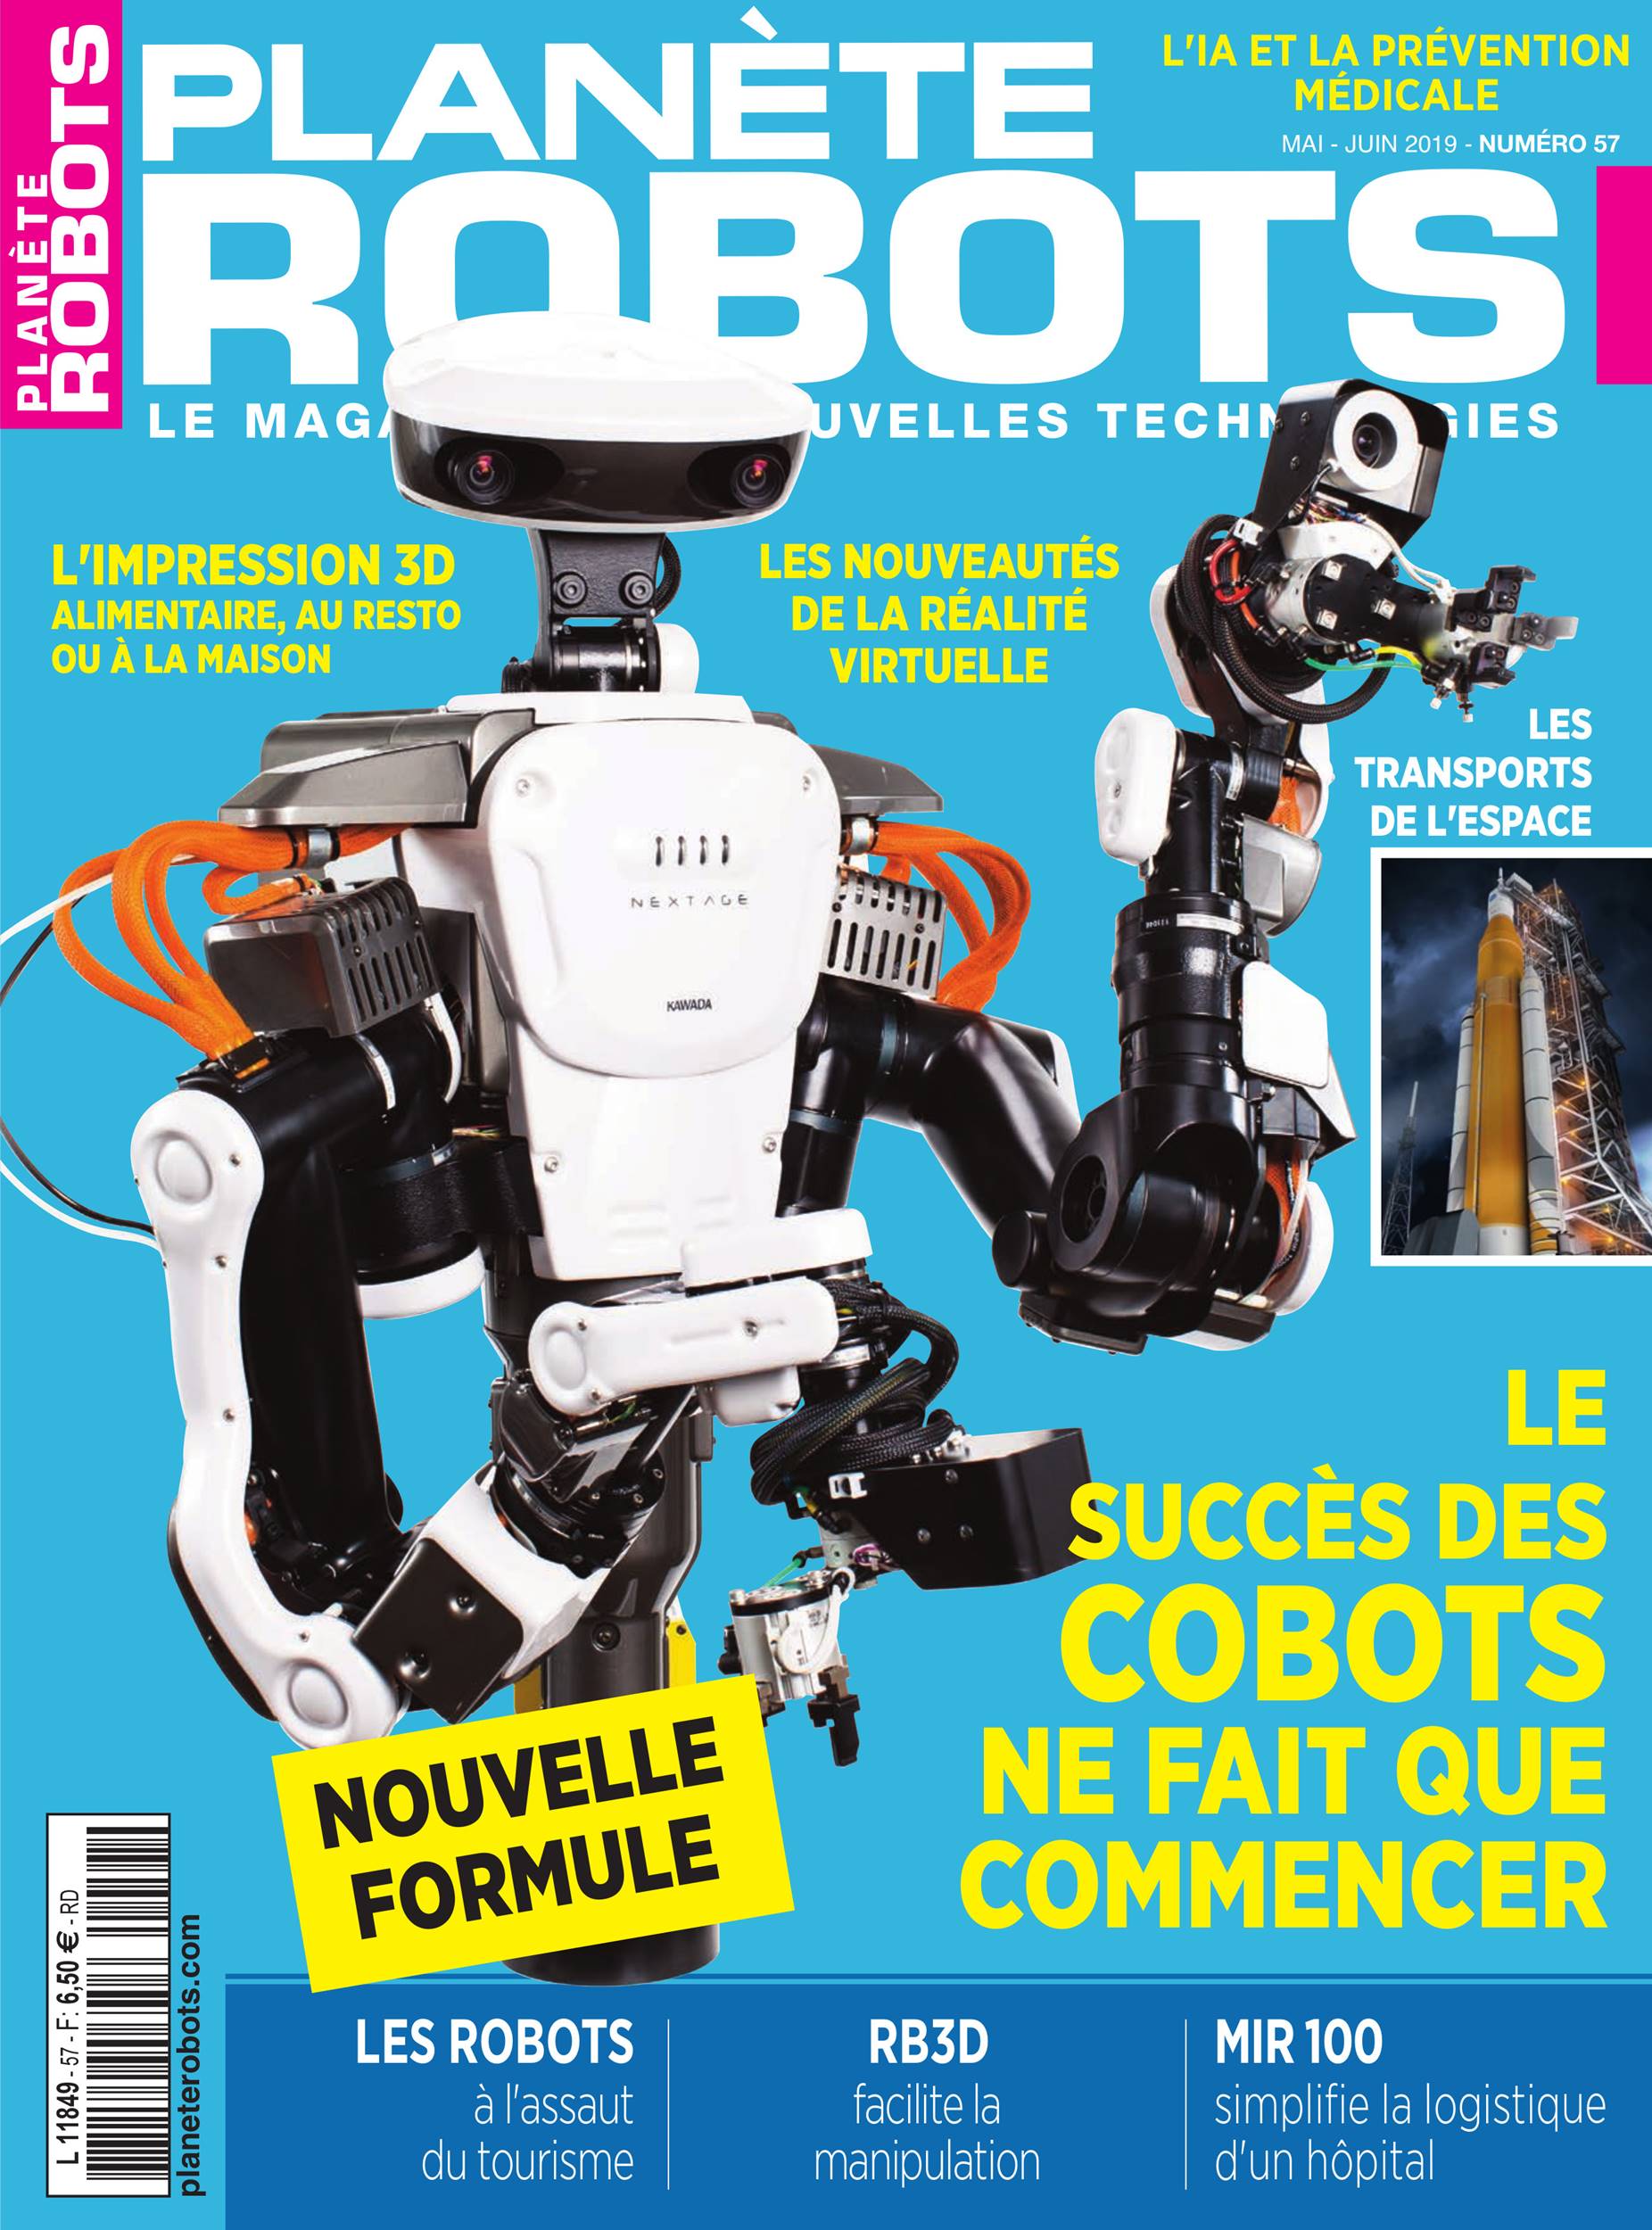 Les nouveaux droits de l’IA et de la robotique